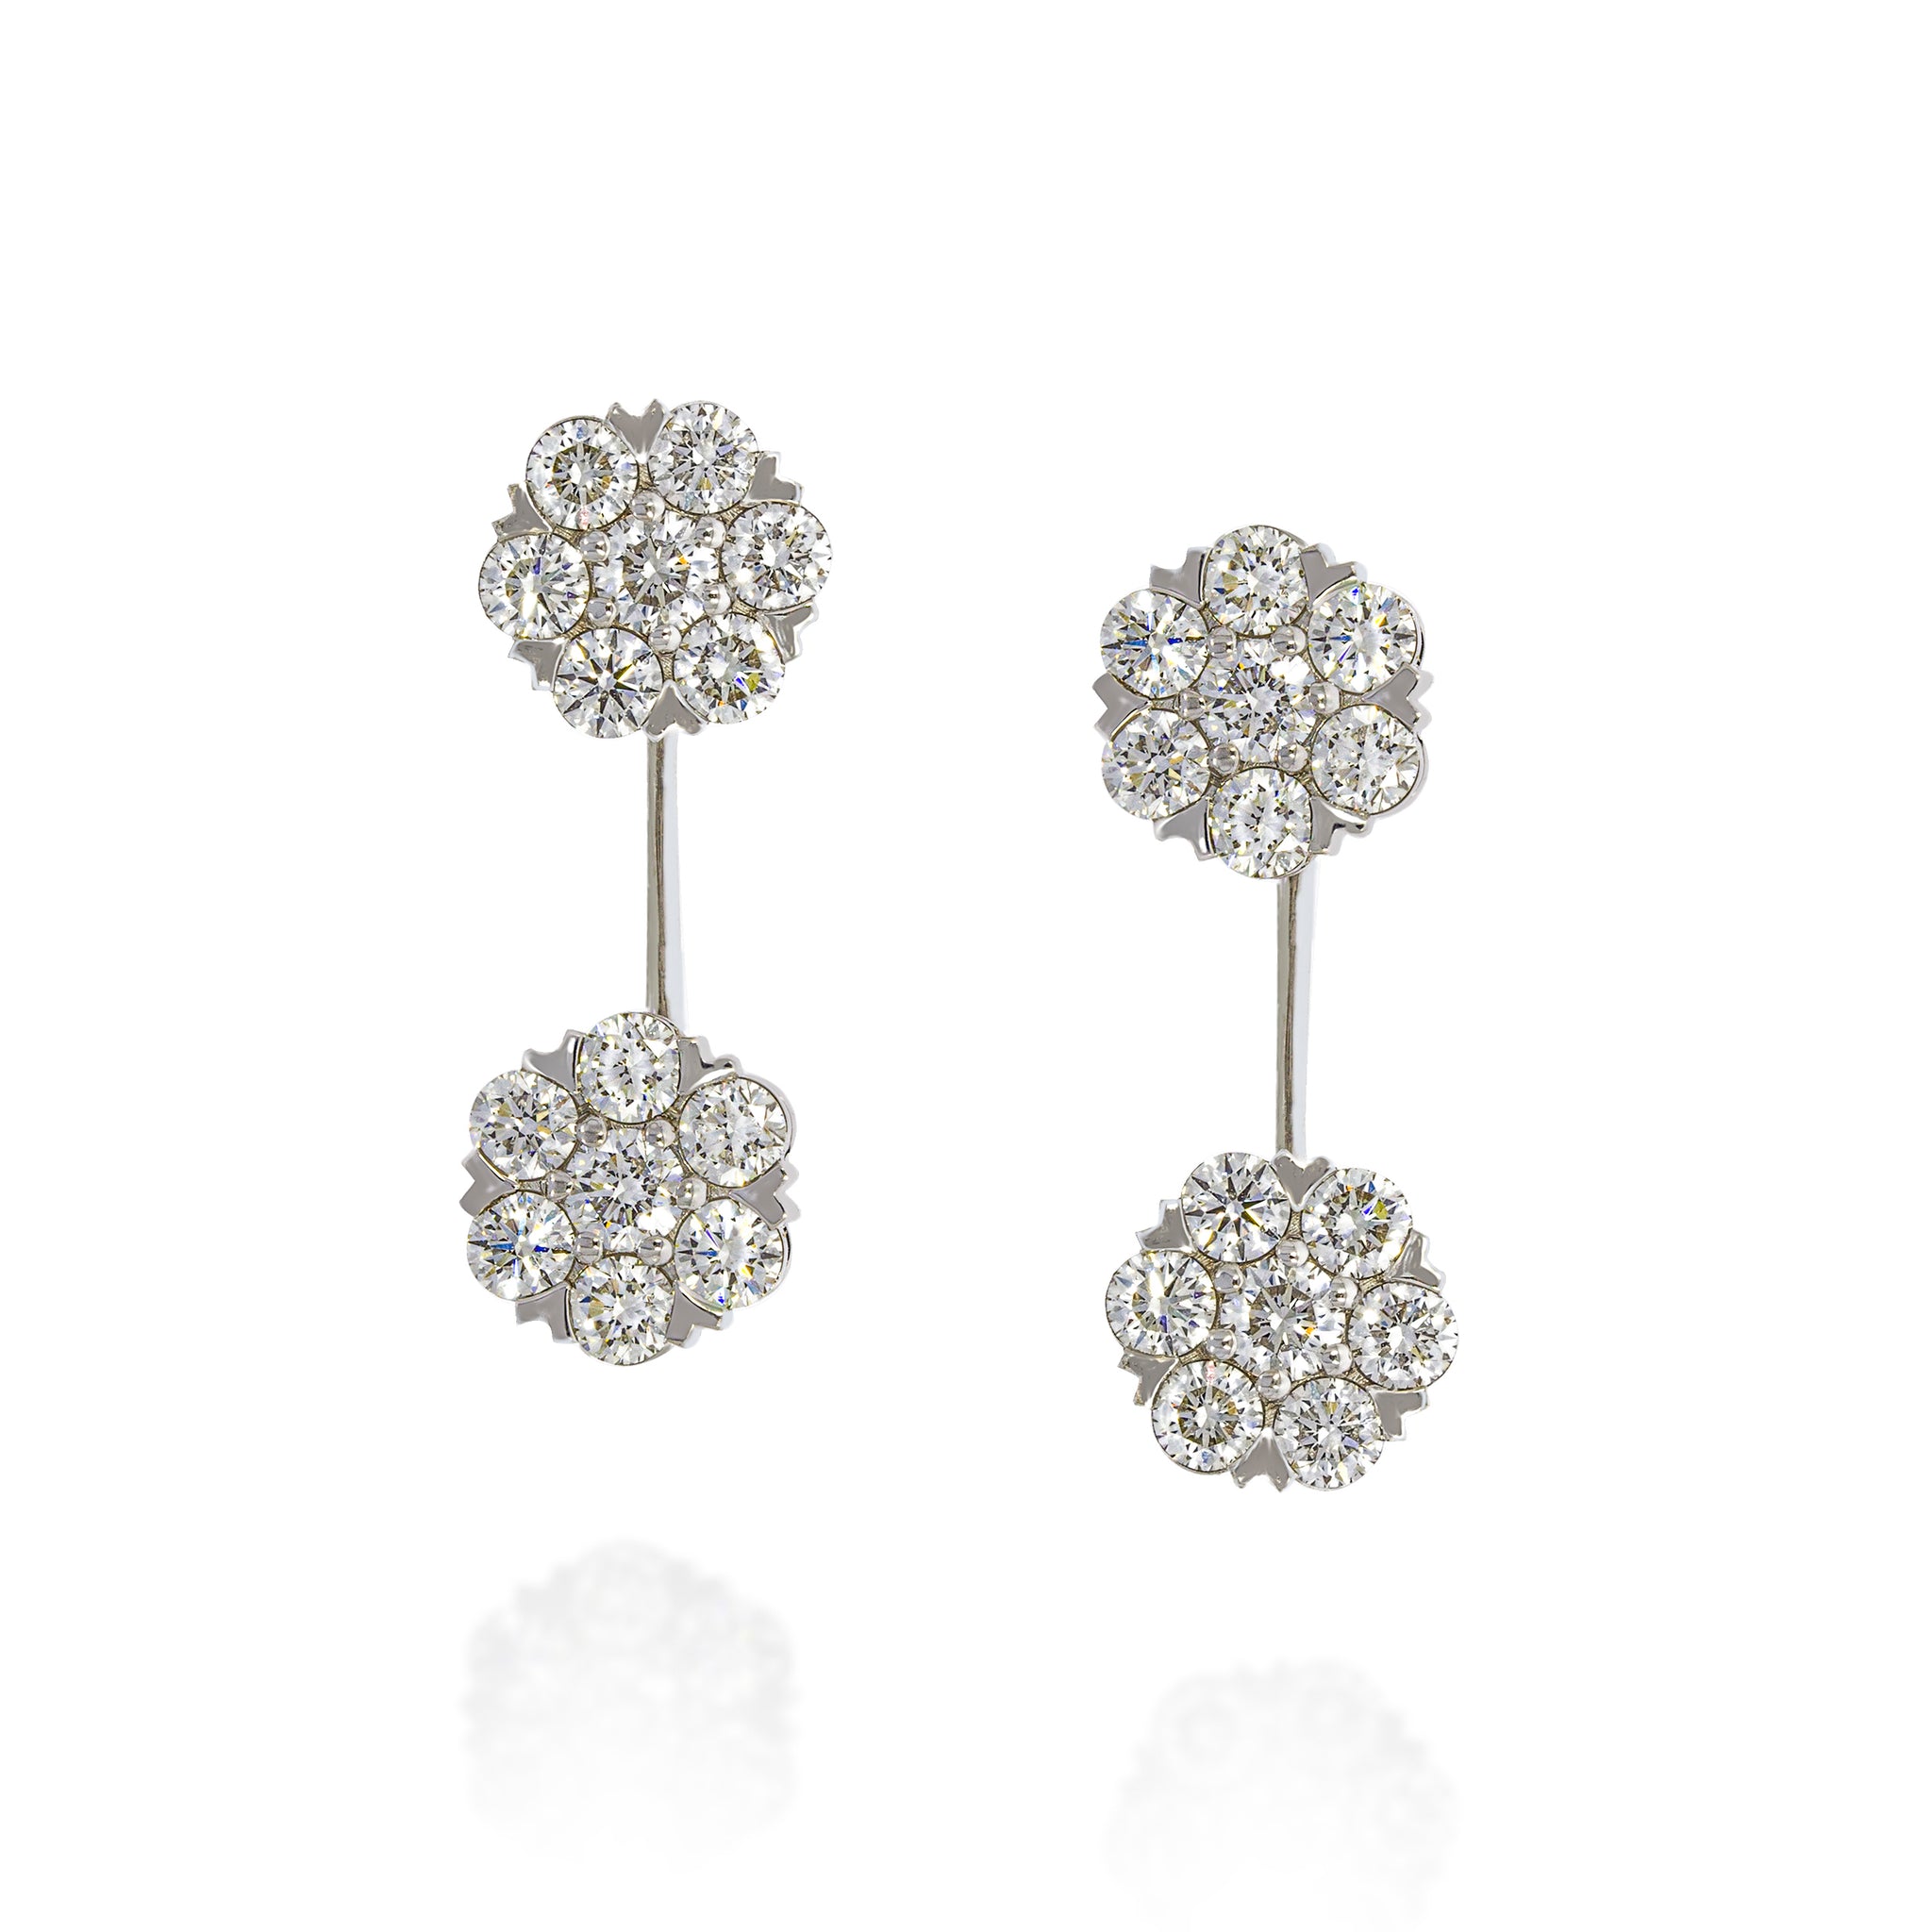 Buy American Diamond Earrings | Earring Designs1 – Nithilah